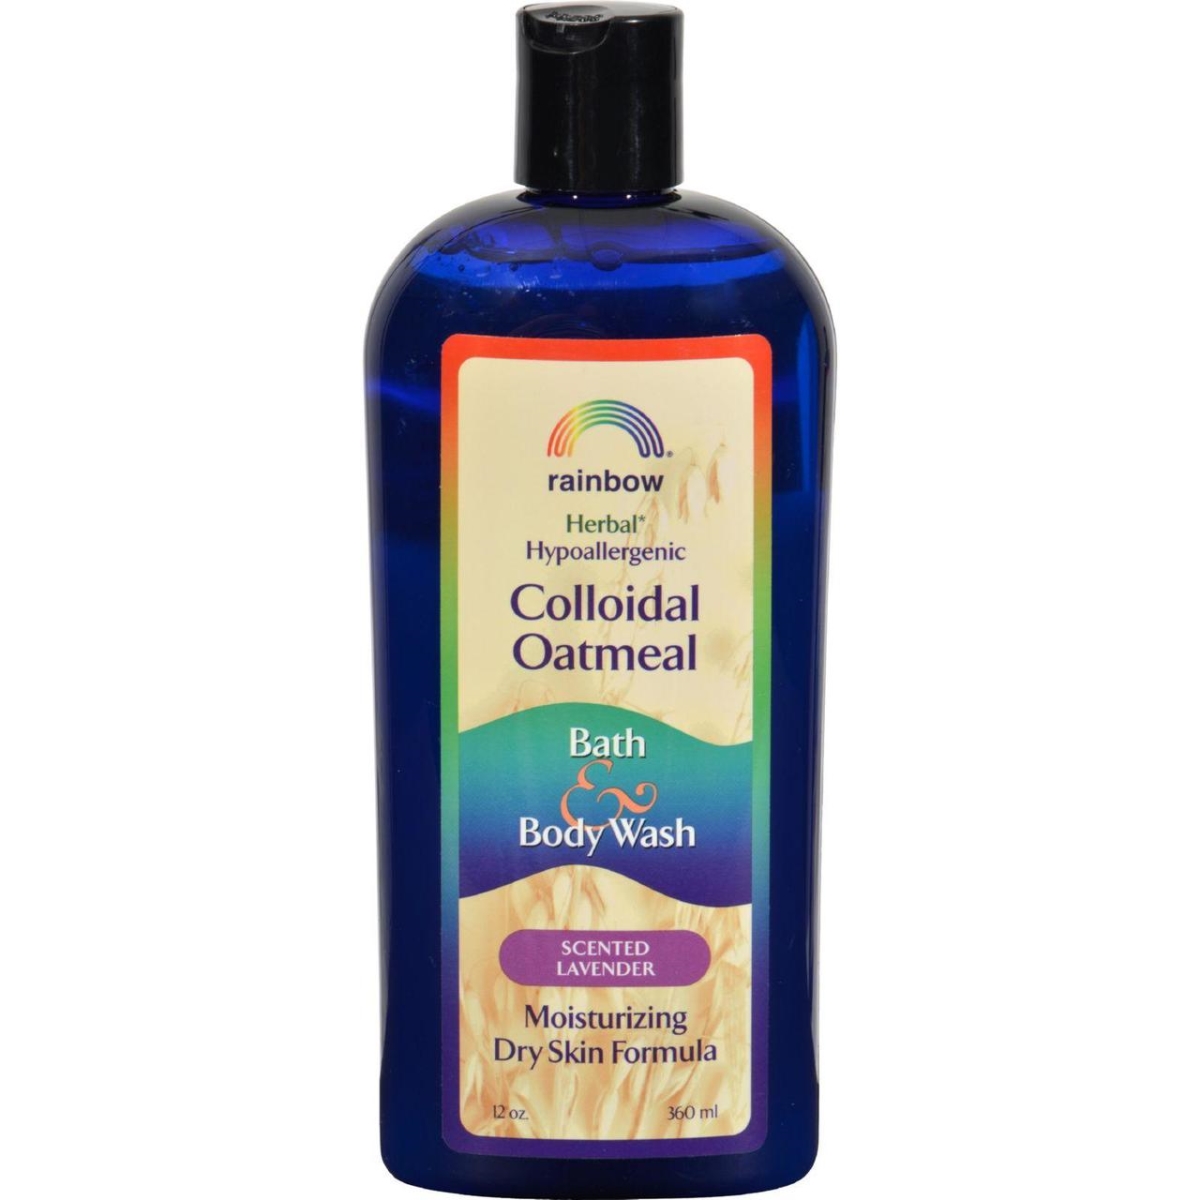 Hg0581777 12 Fl Oz Colloidal Oatmeal Bath & Body Wash - Lavender